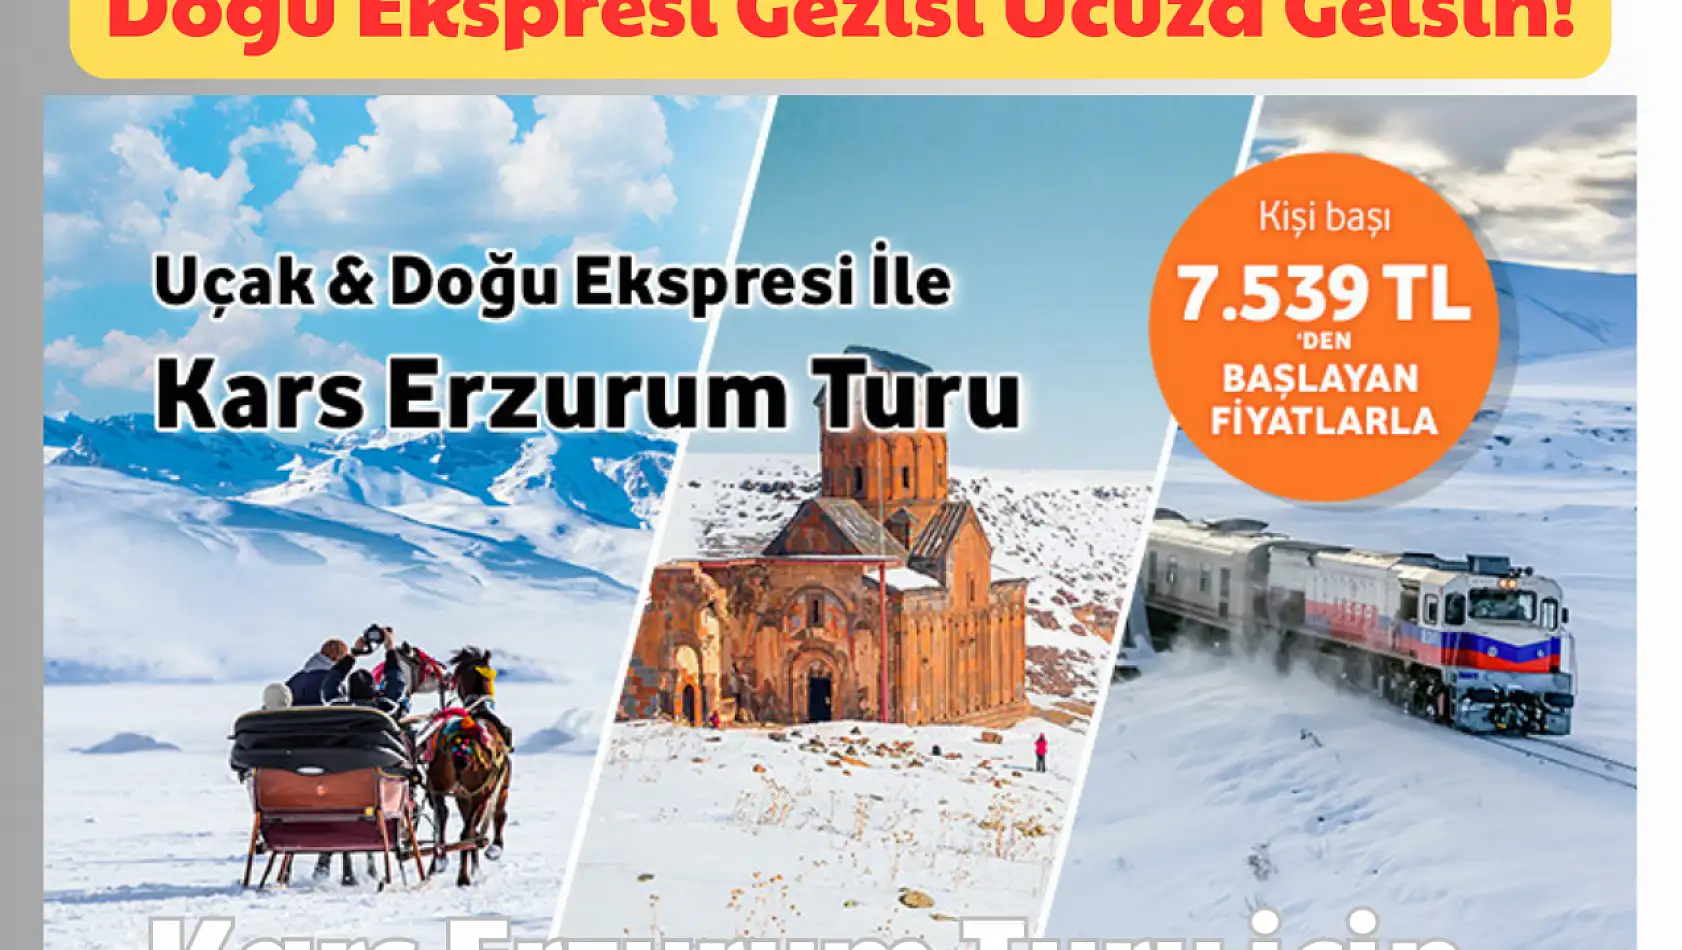 Doğu Ekspresi Gezisi Ucuza Gelsin: Kars Turları için!